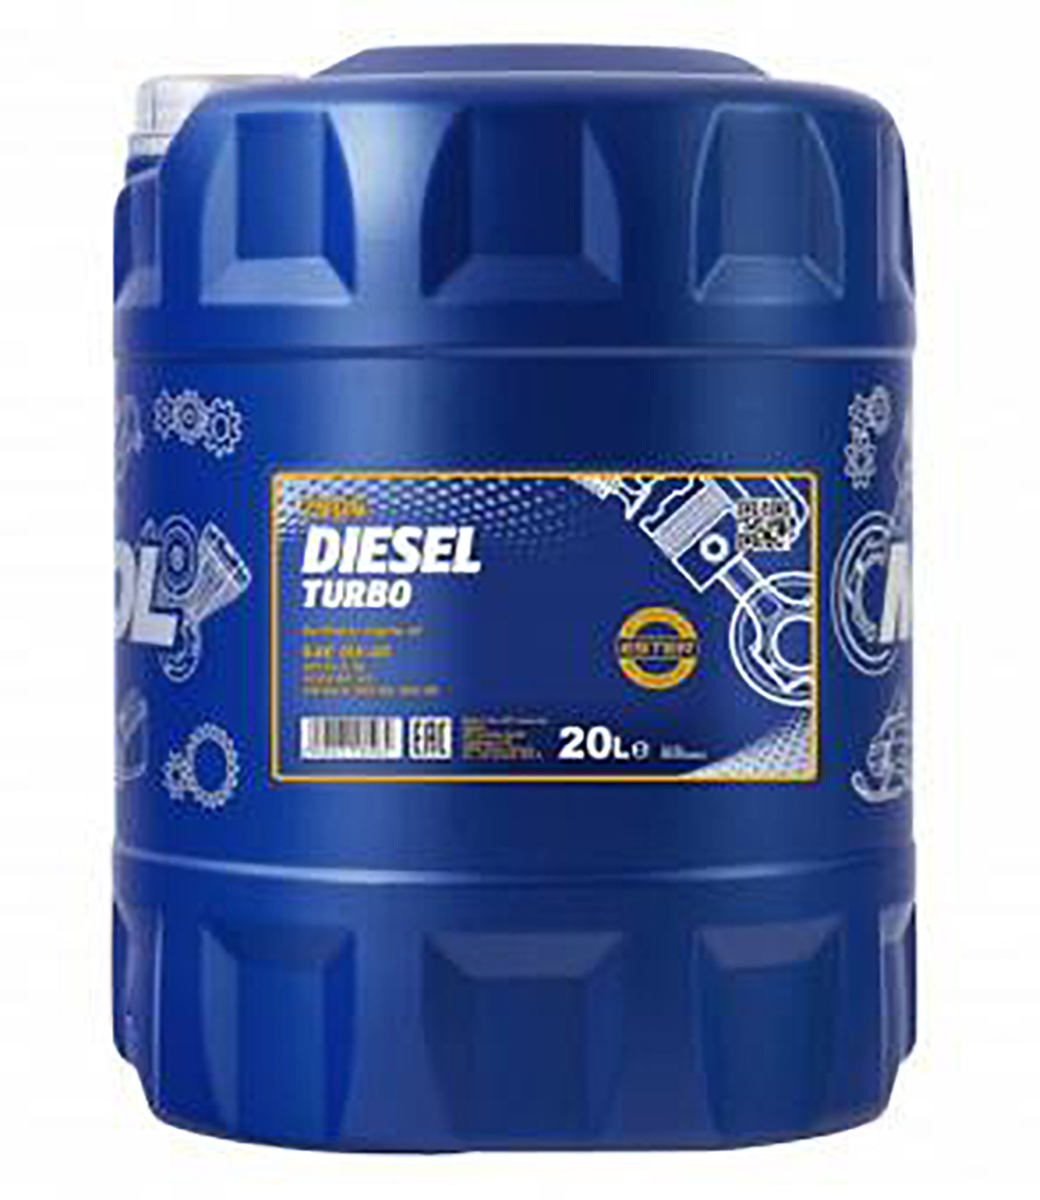 Diesel Turbo 5W-40